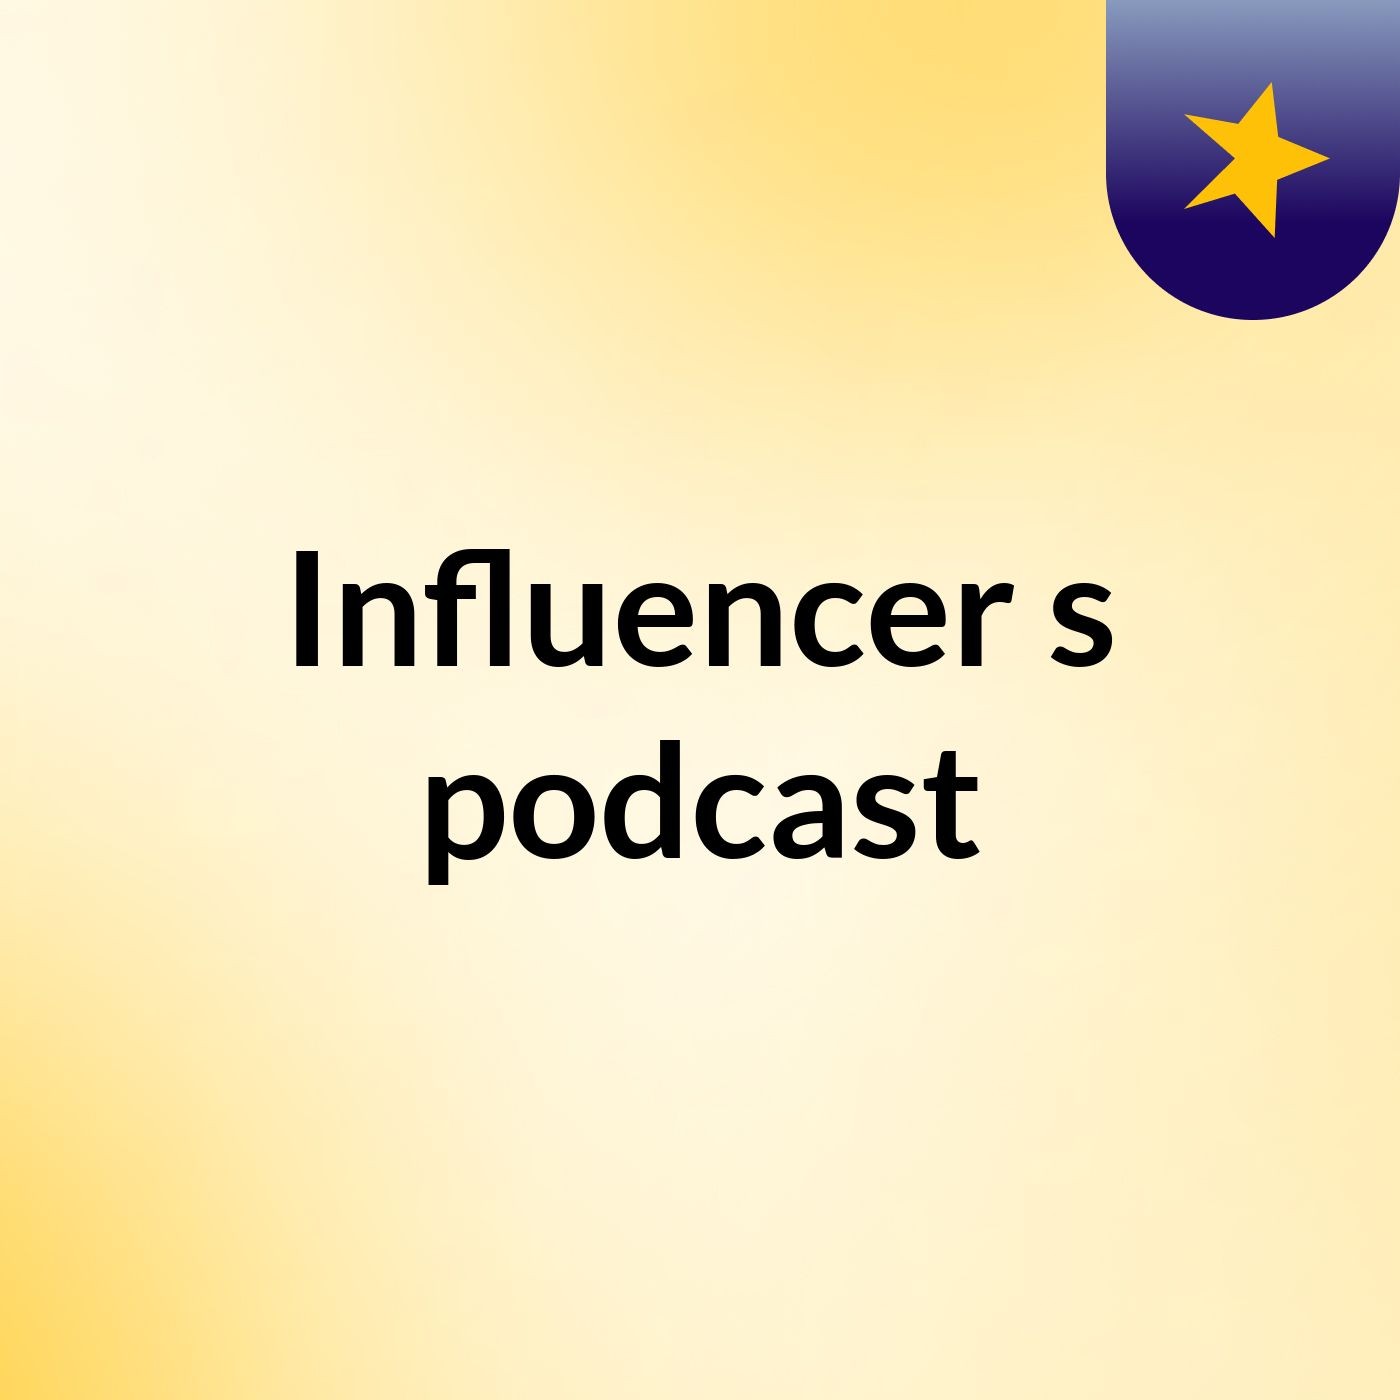 Influencer's podcast